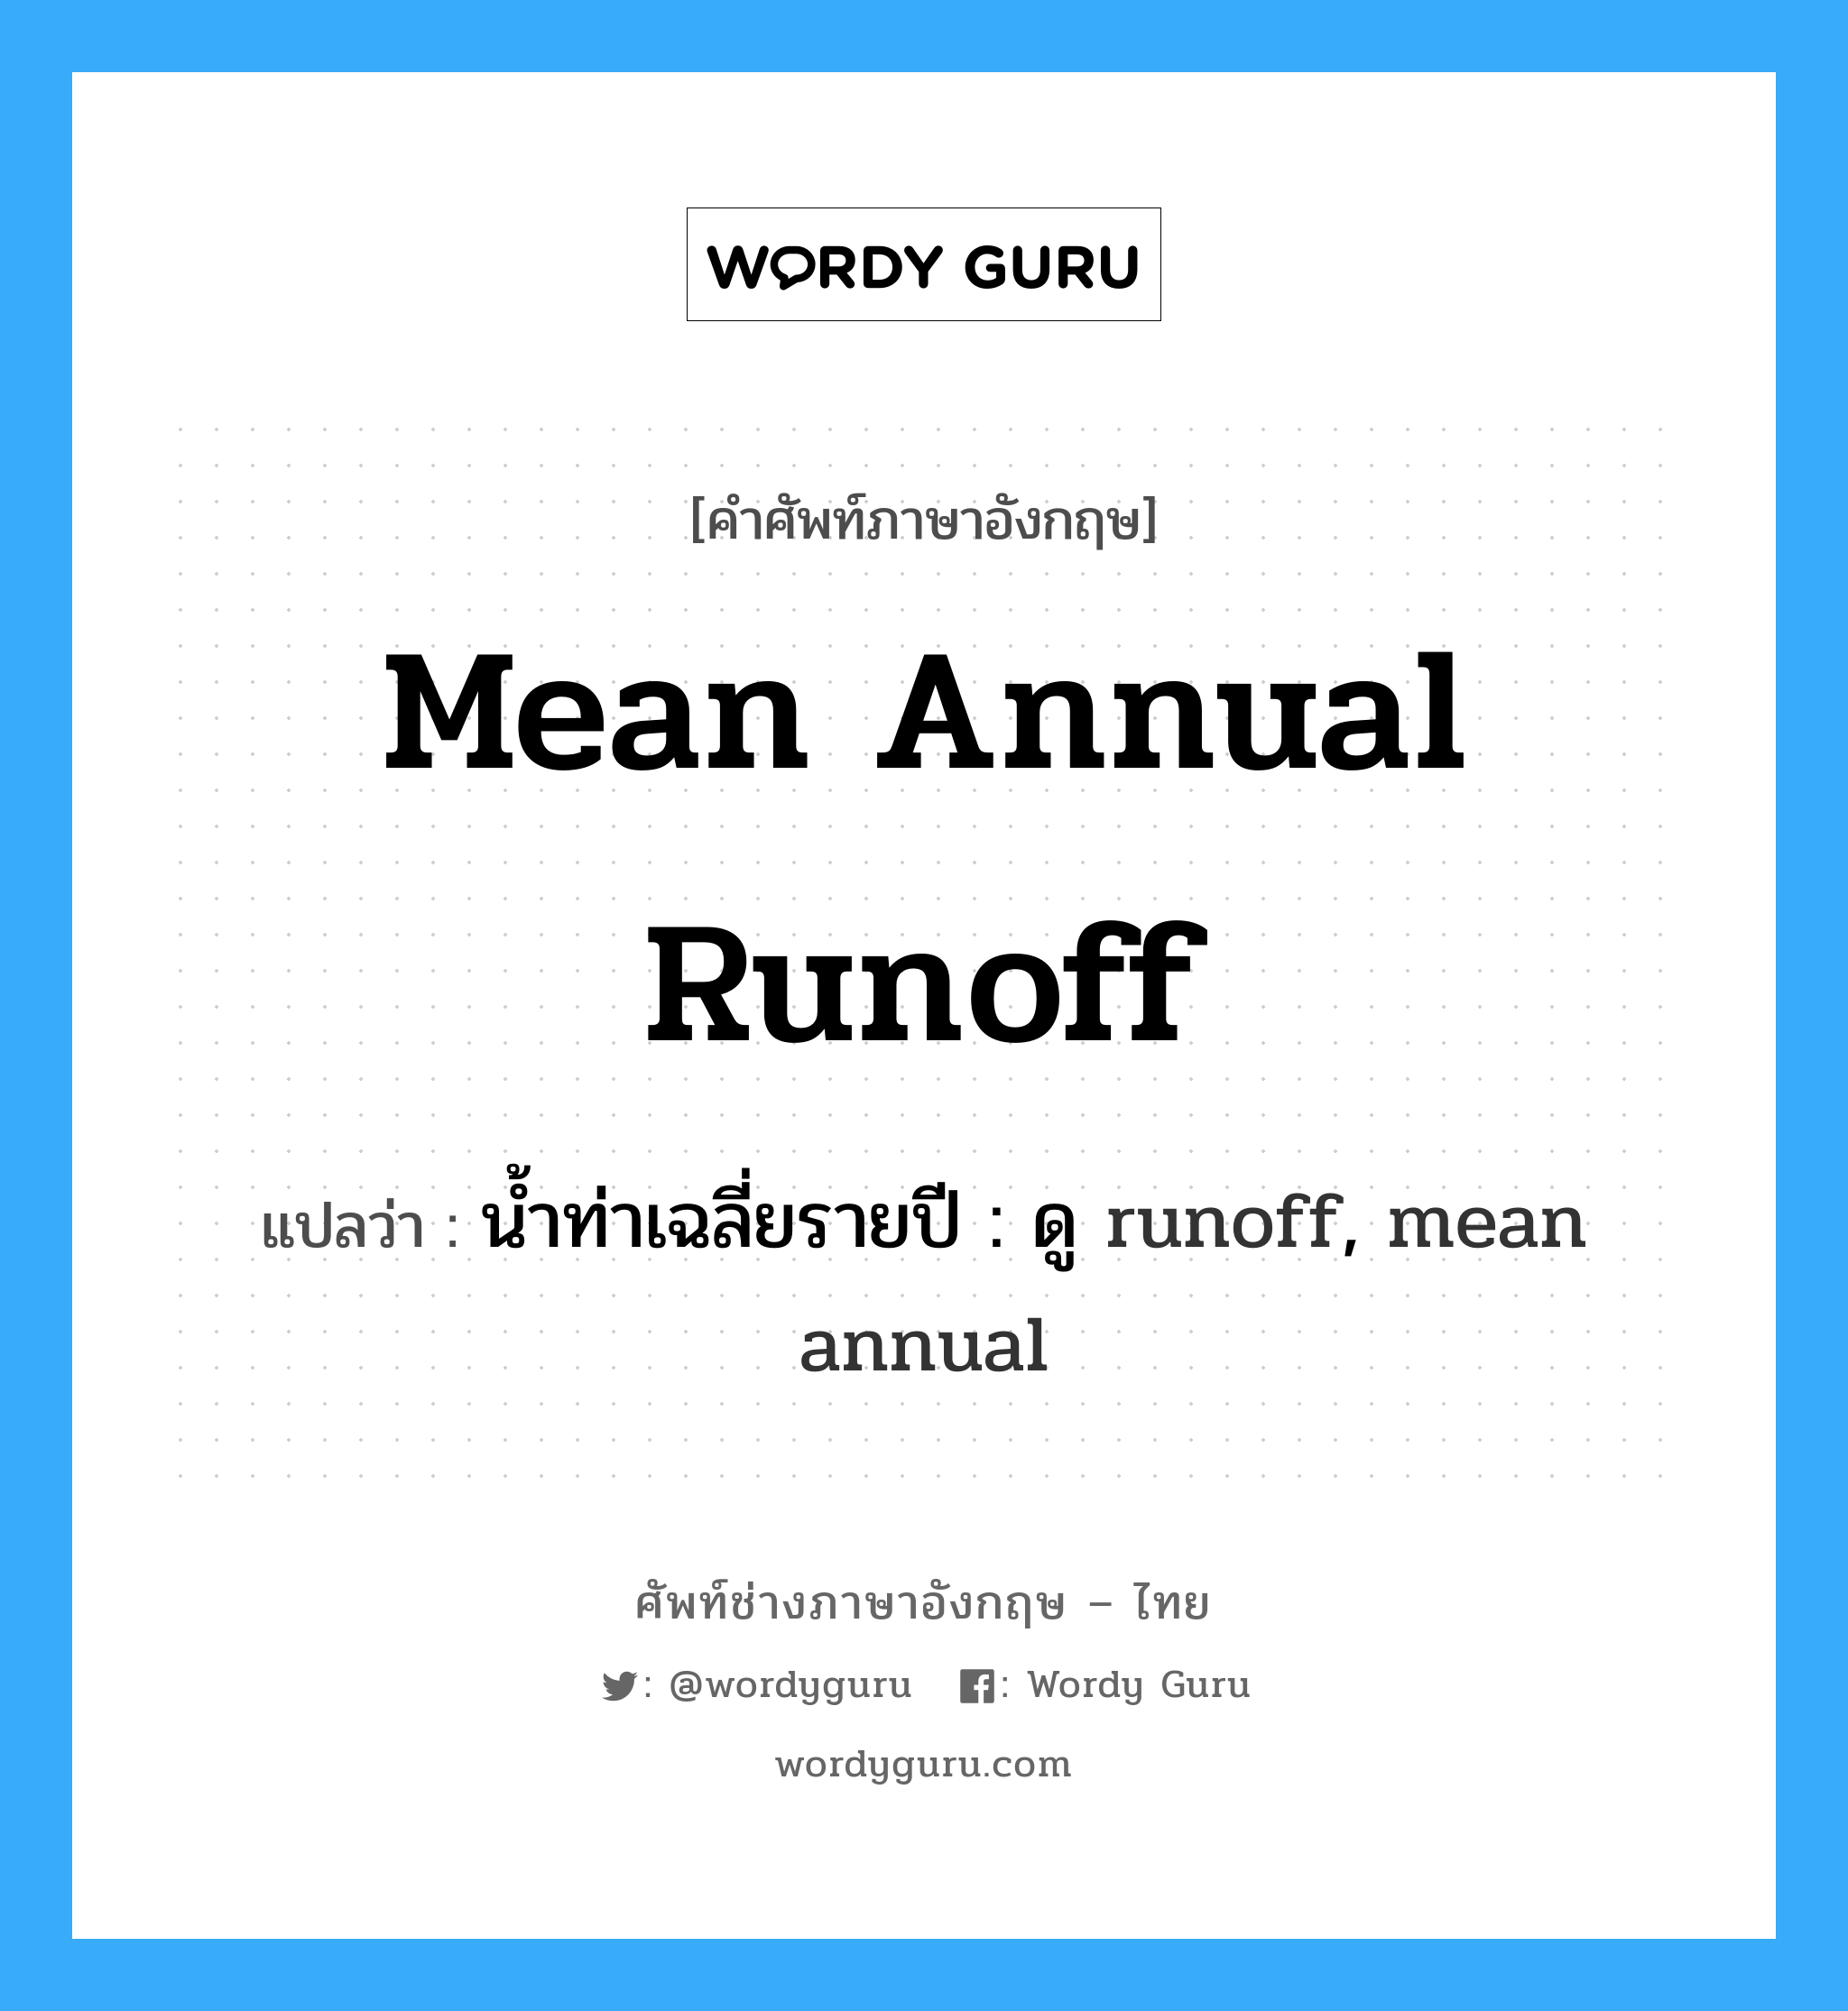 น้ำท่าเฉลี่ยรายปี : ดู runoff, mean annual ภาษาอังกฤษ?, คำศัพท์ช่างภาษาอังกฤษ - ไทย น้ำท่าเฉลี่ยรายปี : ดู runoff, mean annual คำศัพท์ภาษาอังกฤษ น้ำท่าเฉลี่ยรายปี : ดู runoff, mean annual แปลว่า mean annual runoff